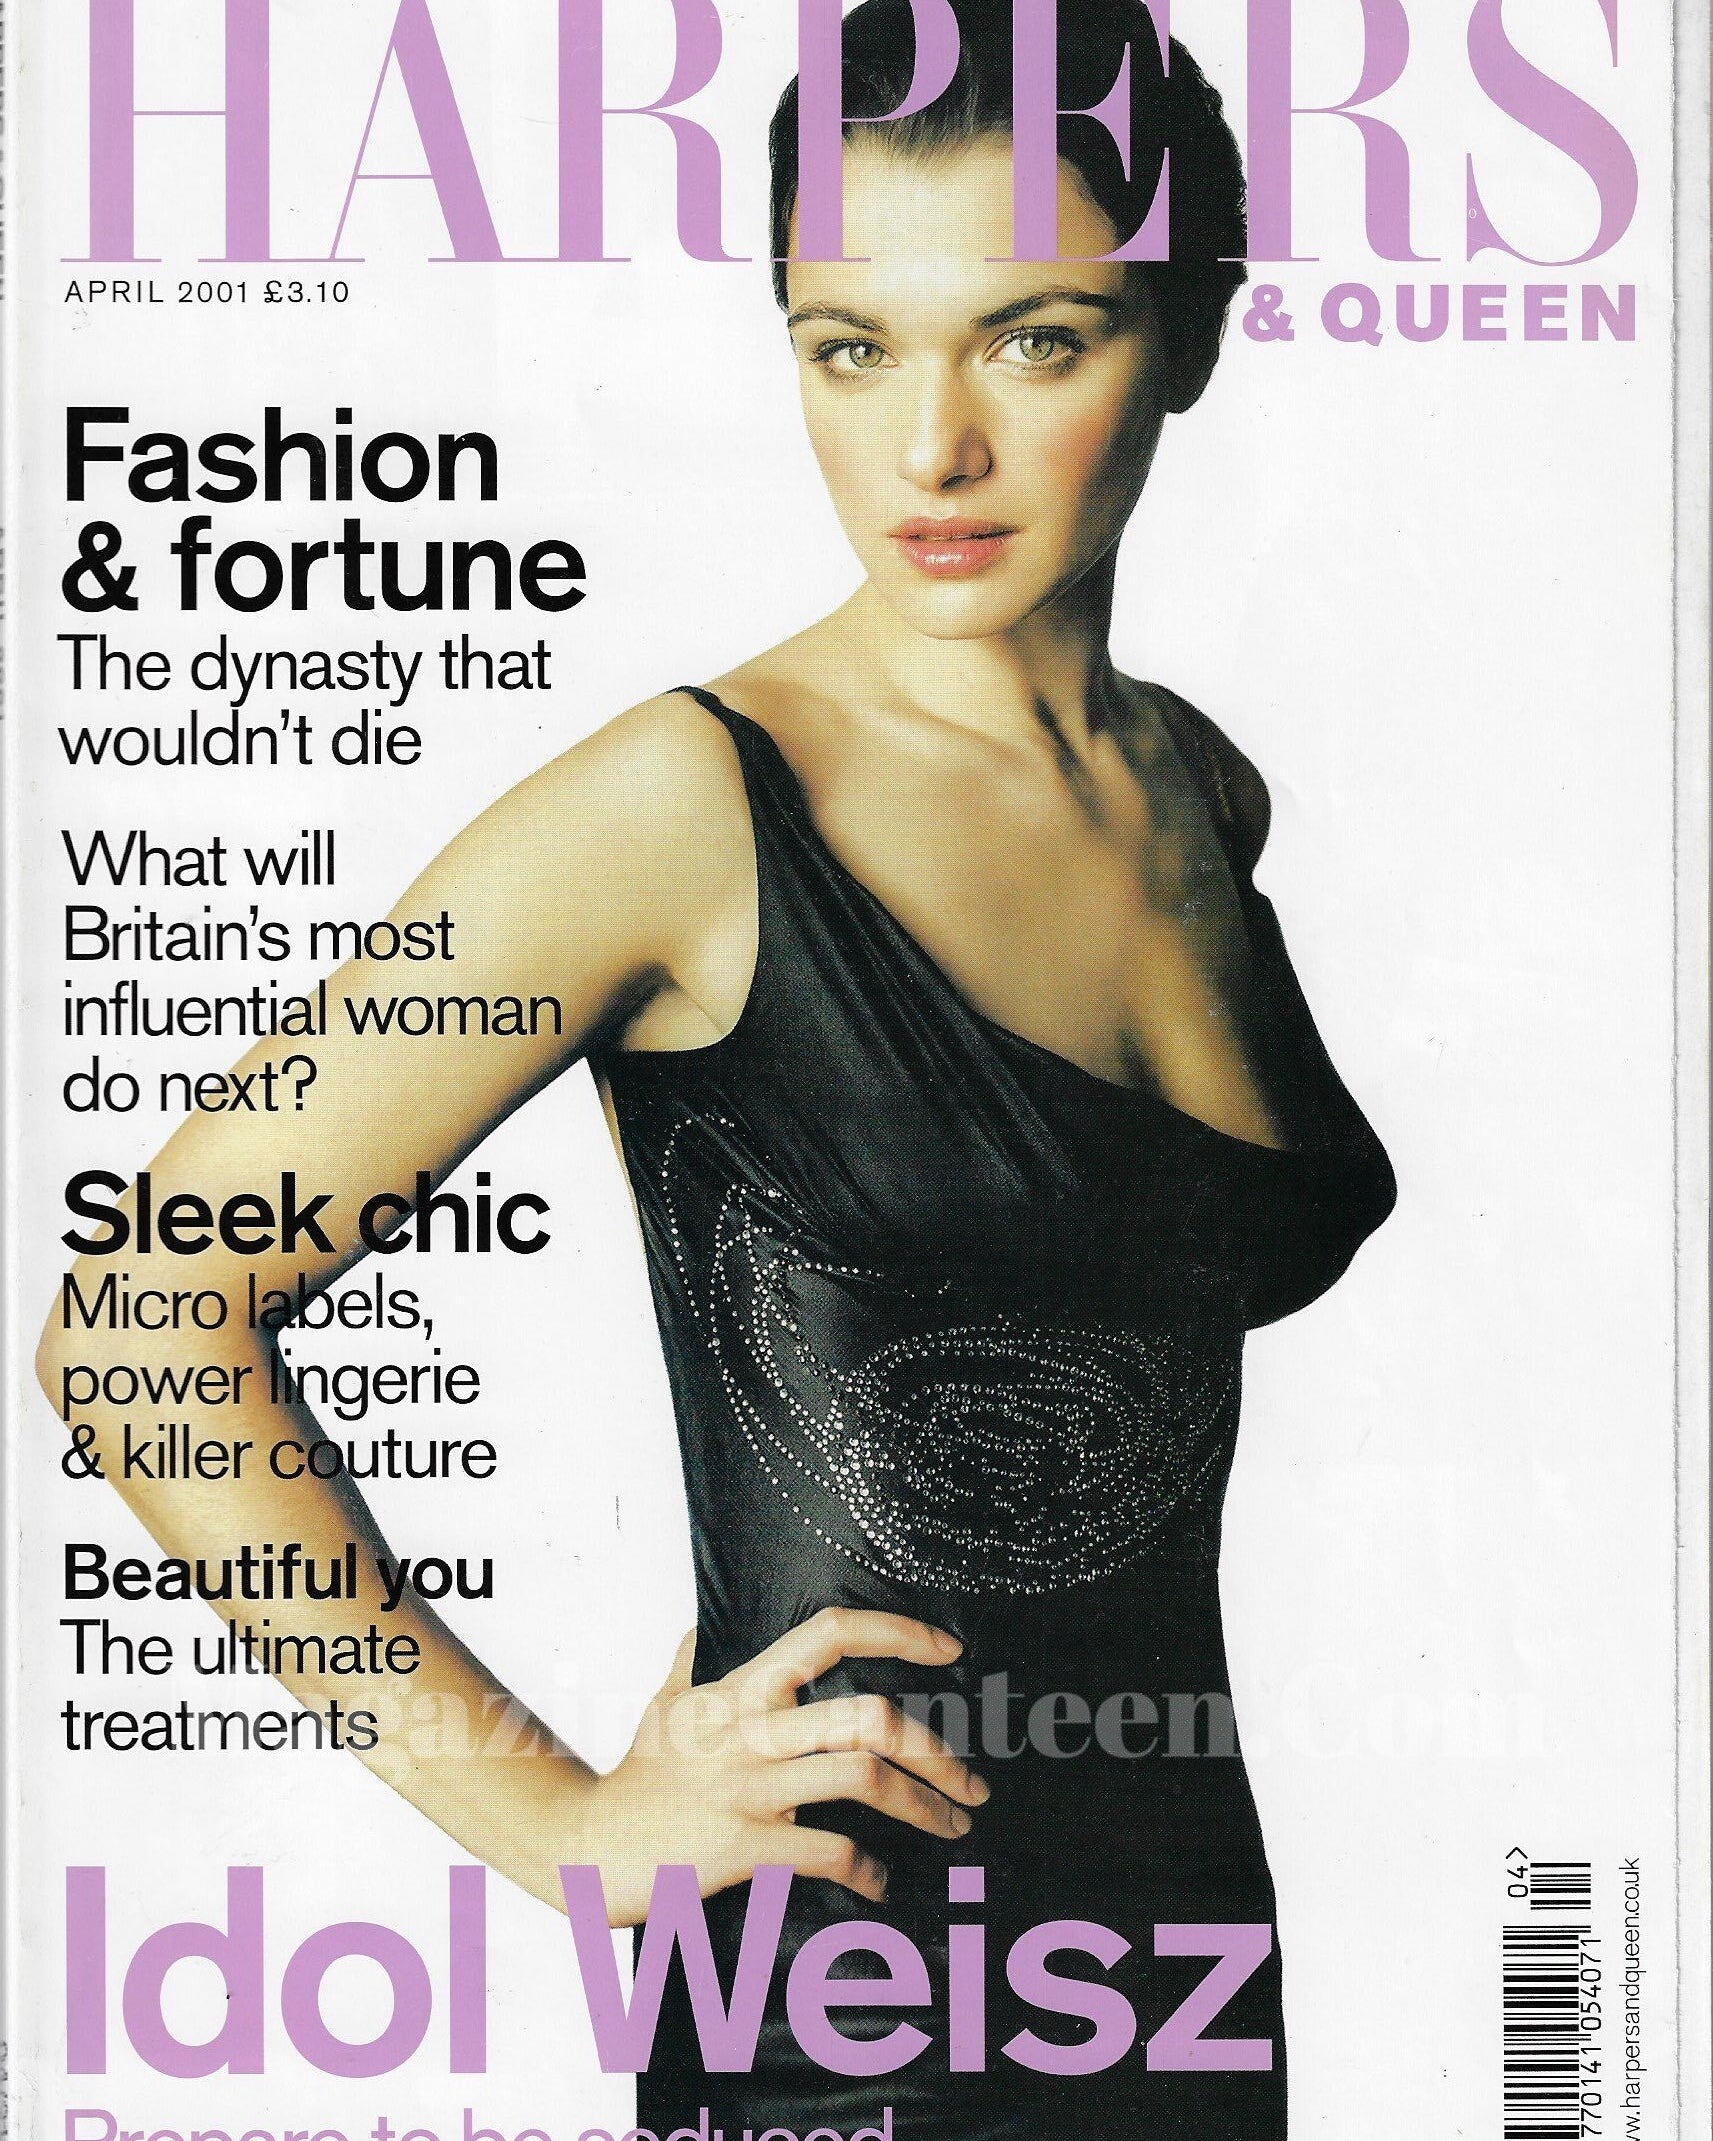 Harpers & Queen Magazine - Rachel Weisz